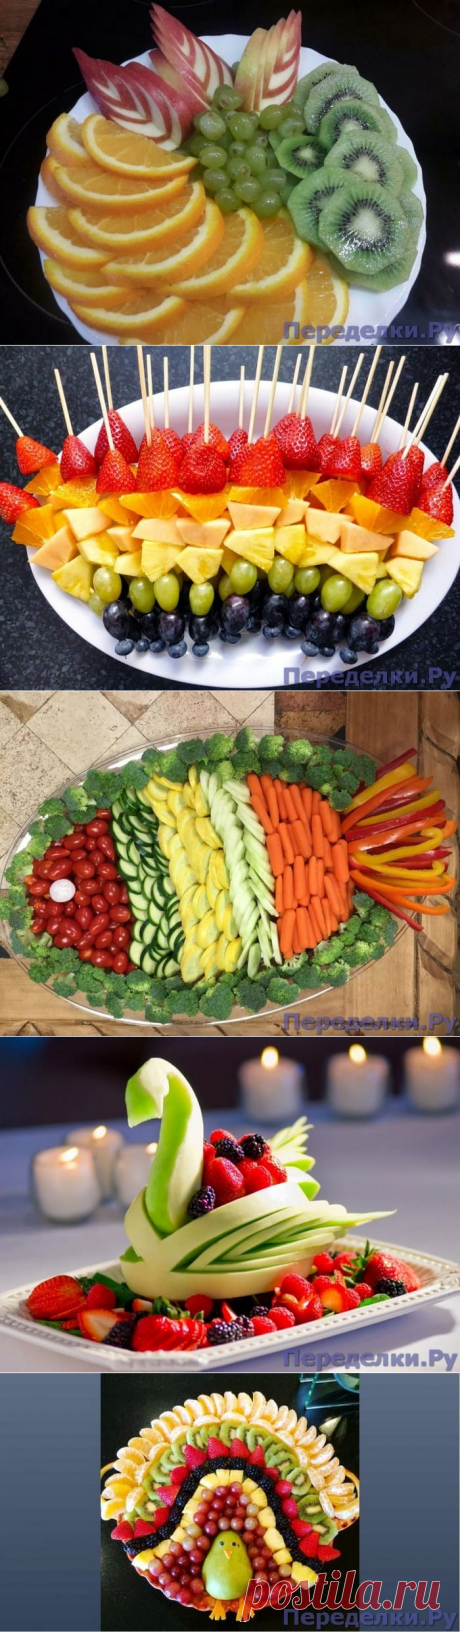 Красивые фруктовые и овощные нарезки на праздничный стол - Страница 2 из 4 - Переделки.РуПеределки.Ру | Page 2